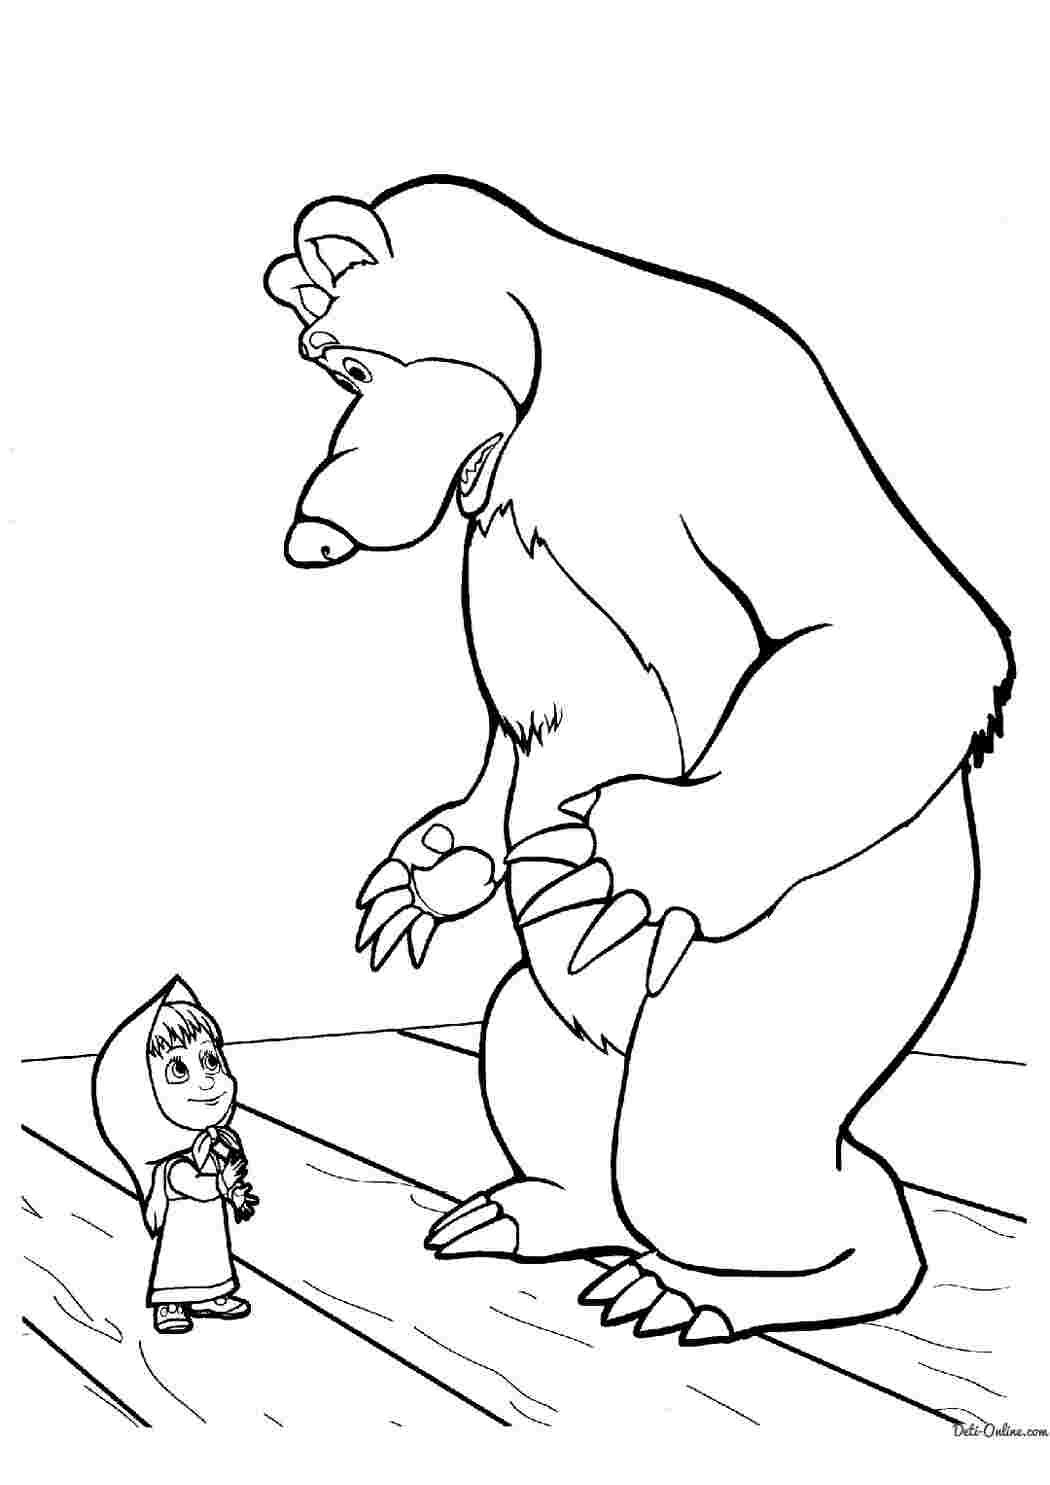 Раскраски  раскраски на тему маша и медведь               раскраски на тему маша и медведь для мальчиков и девочек. Интересные раскраски с персонажами мультфильма маша и медведь для детей           